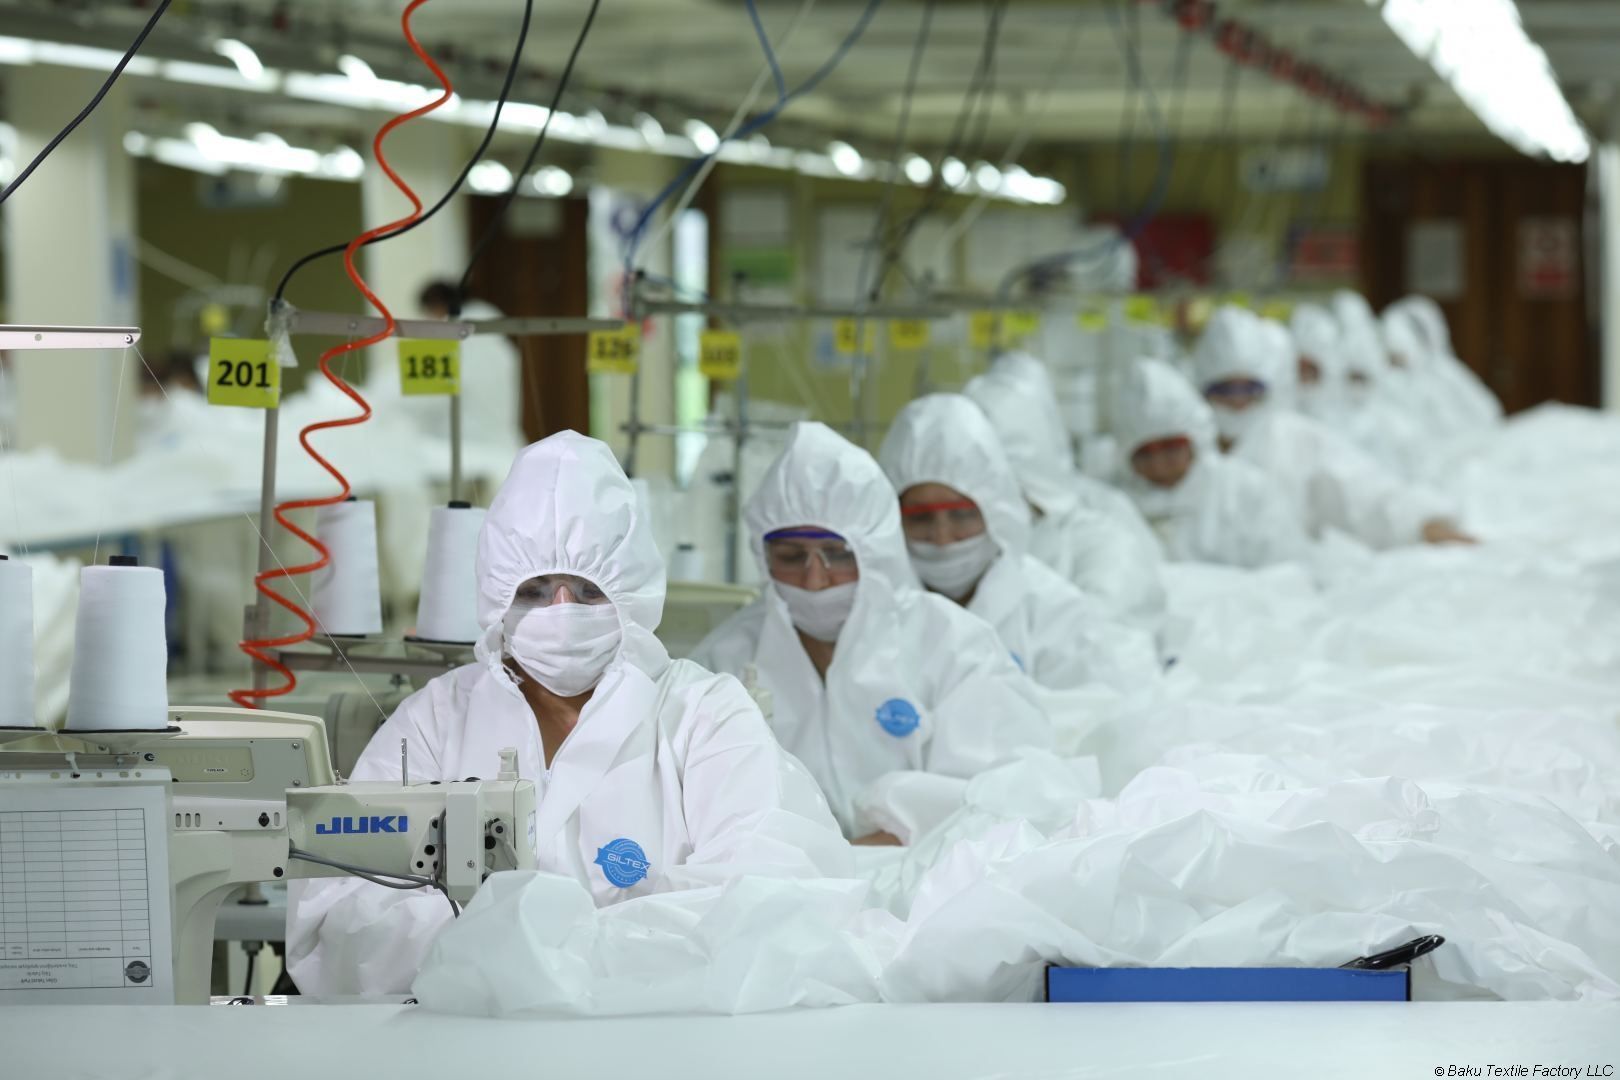 Azerbaïdjan : 400 000 masques médicaux sont fabriqués chaque jour dans l'Usine textile de Bakou (PHOTO)